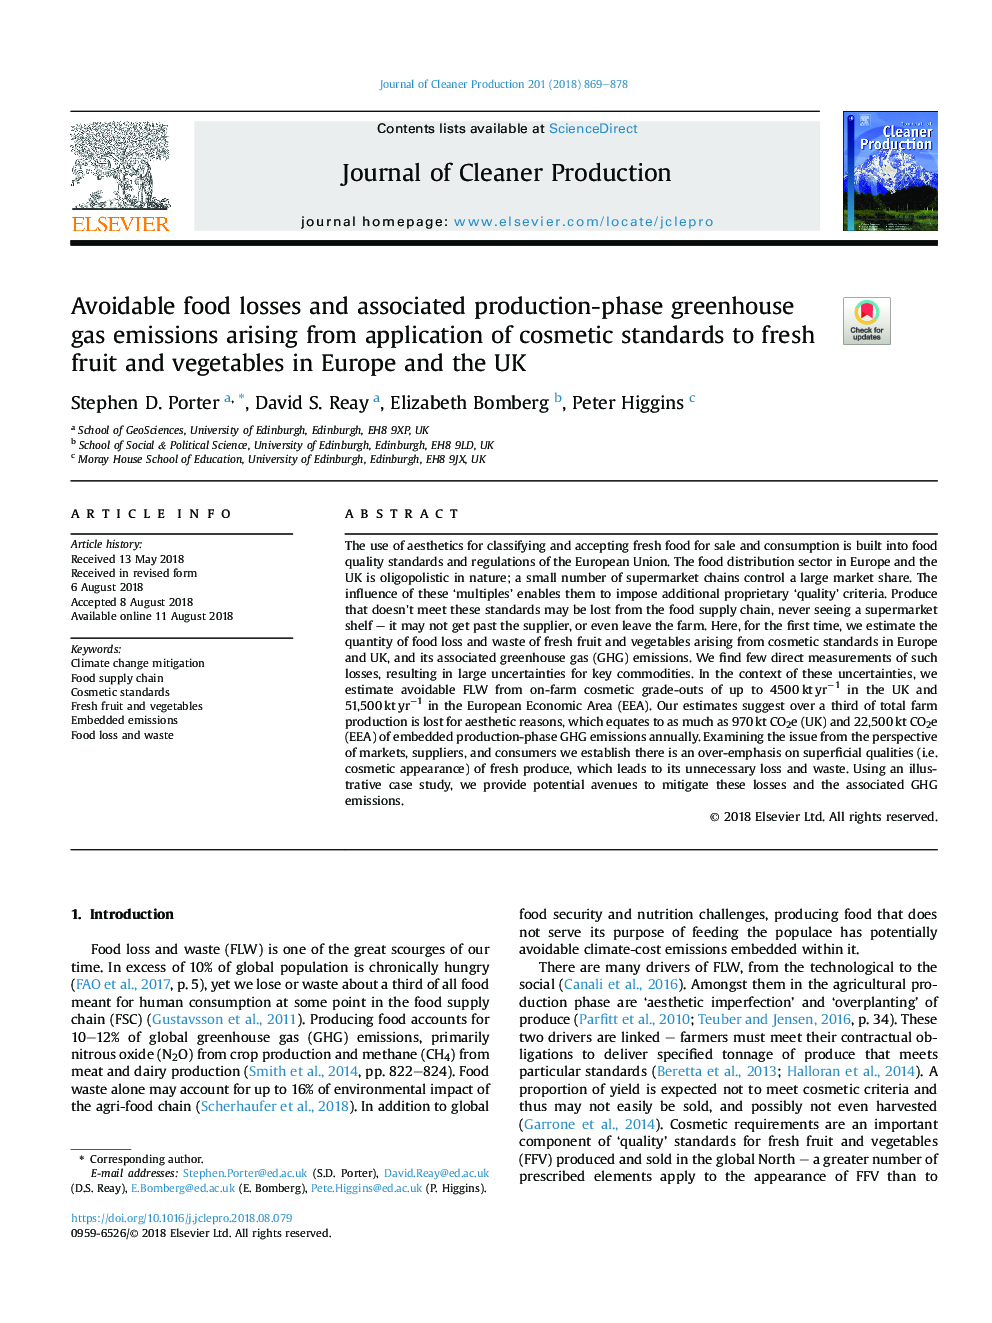 از دست دادن مواد غذایی قابل اجتناب و تولید گازهای گلخانه ای مرتبط با تولید گازهای گلخانه ای ناشی از استفاده از استانداردهای آرایشی به میوه ها و سبزیجات تازه در اروپا و انگلستان 